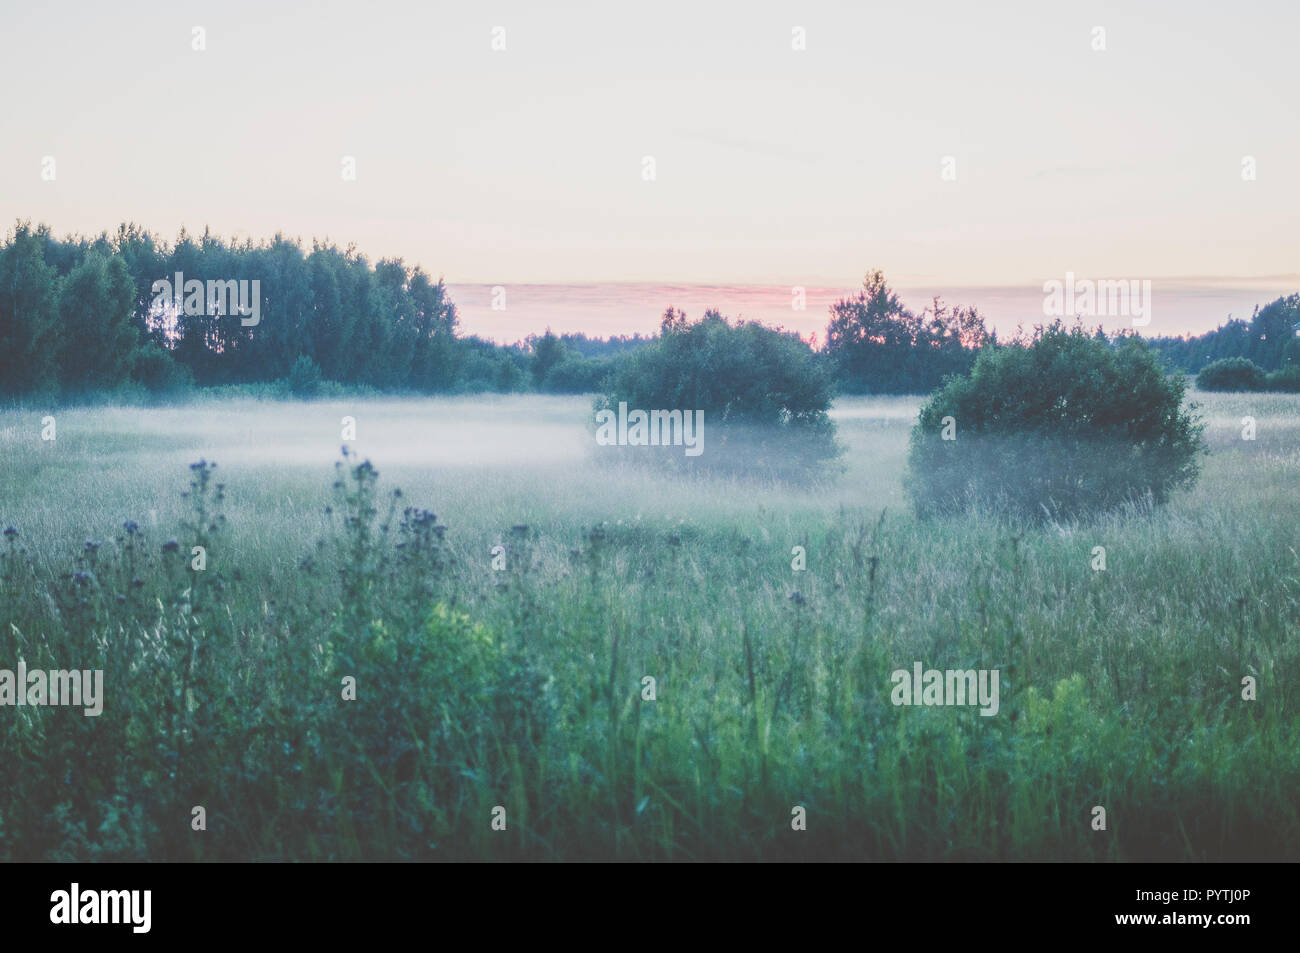 Brouillard blanc jette sur la pelouse. Scène romantique soirée d'été. Banque D'Images